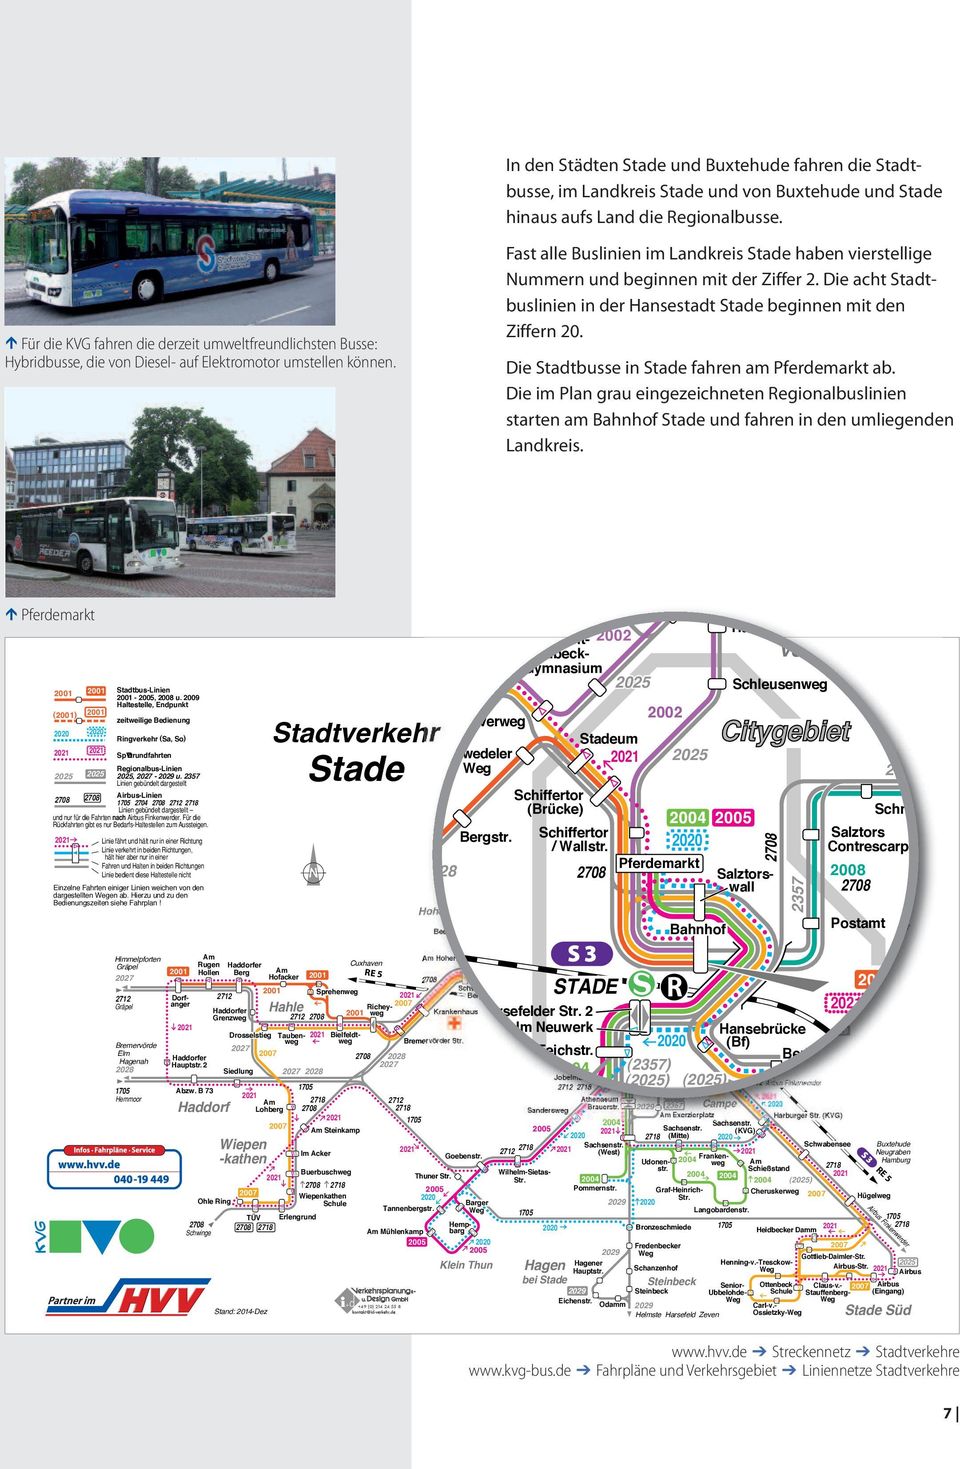 Fast alle Buslinien im Landkreis haben vierstellige Nummern und beginnen mit der Ziffer 2. Die acht Stadtbuslinien in der Hansestadt beginnen mit den Ziffern 20.